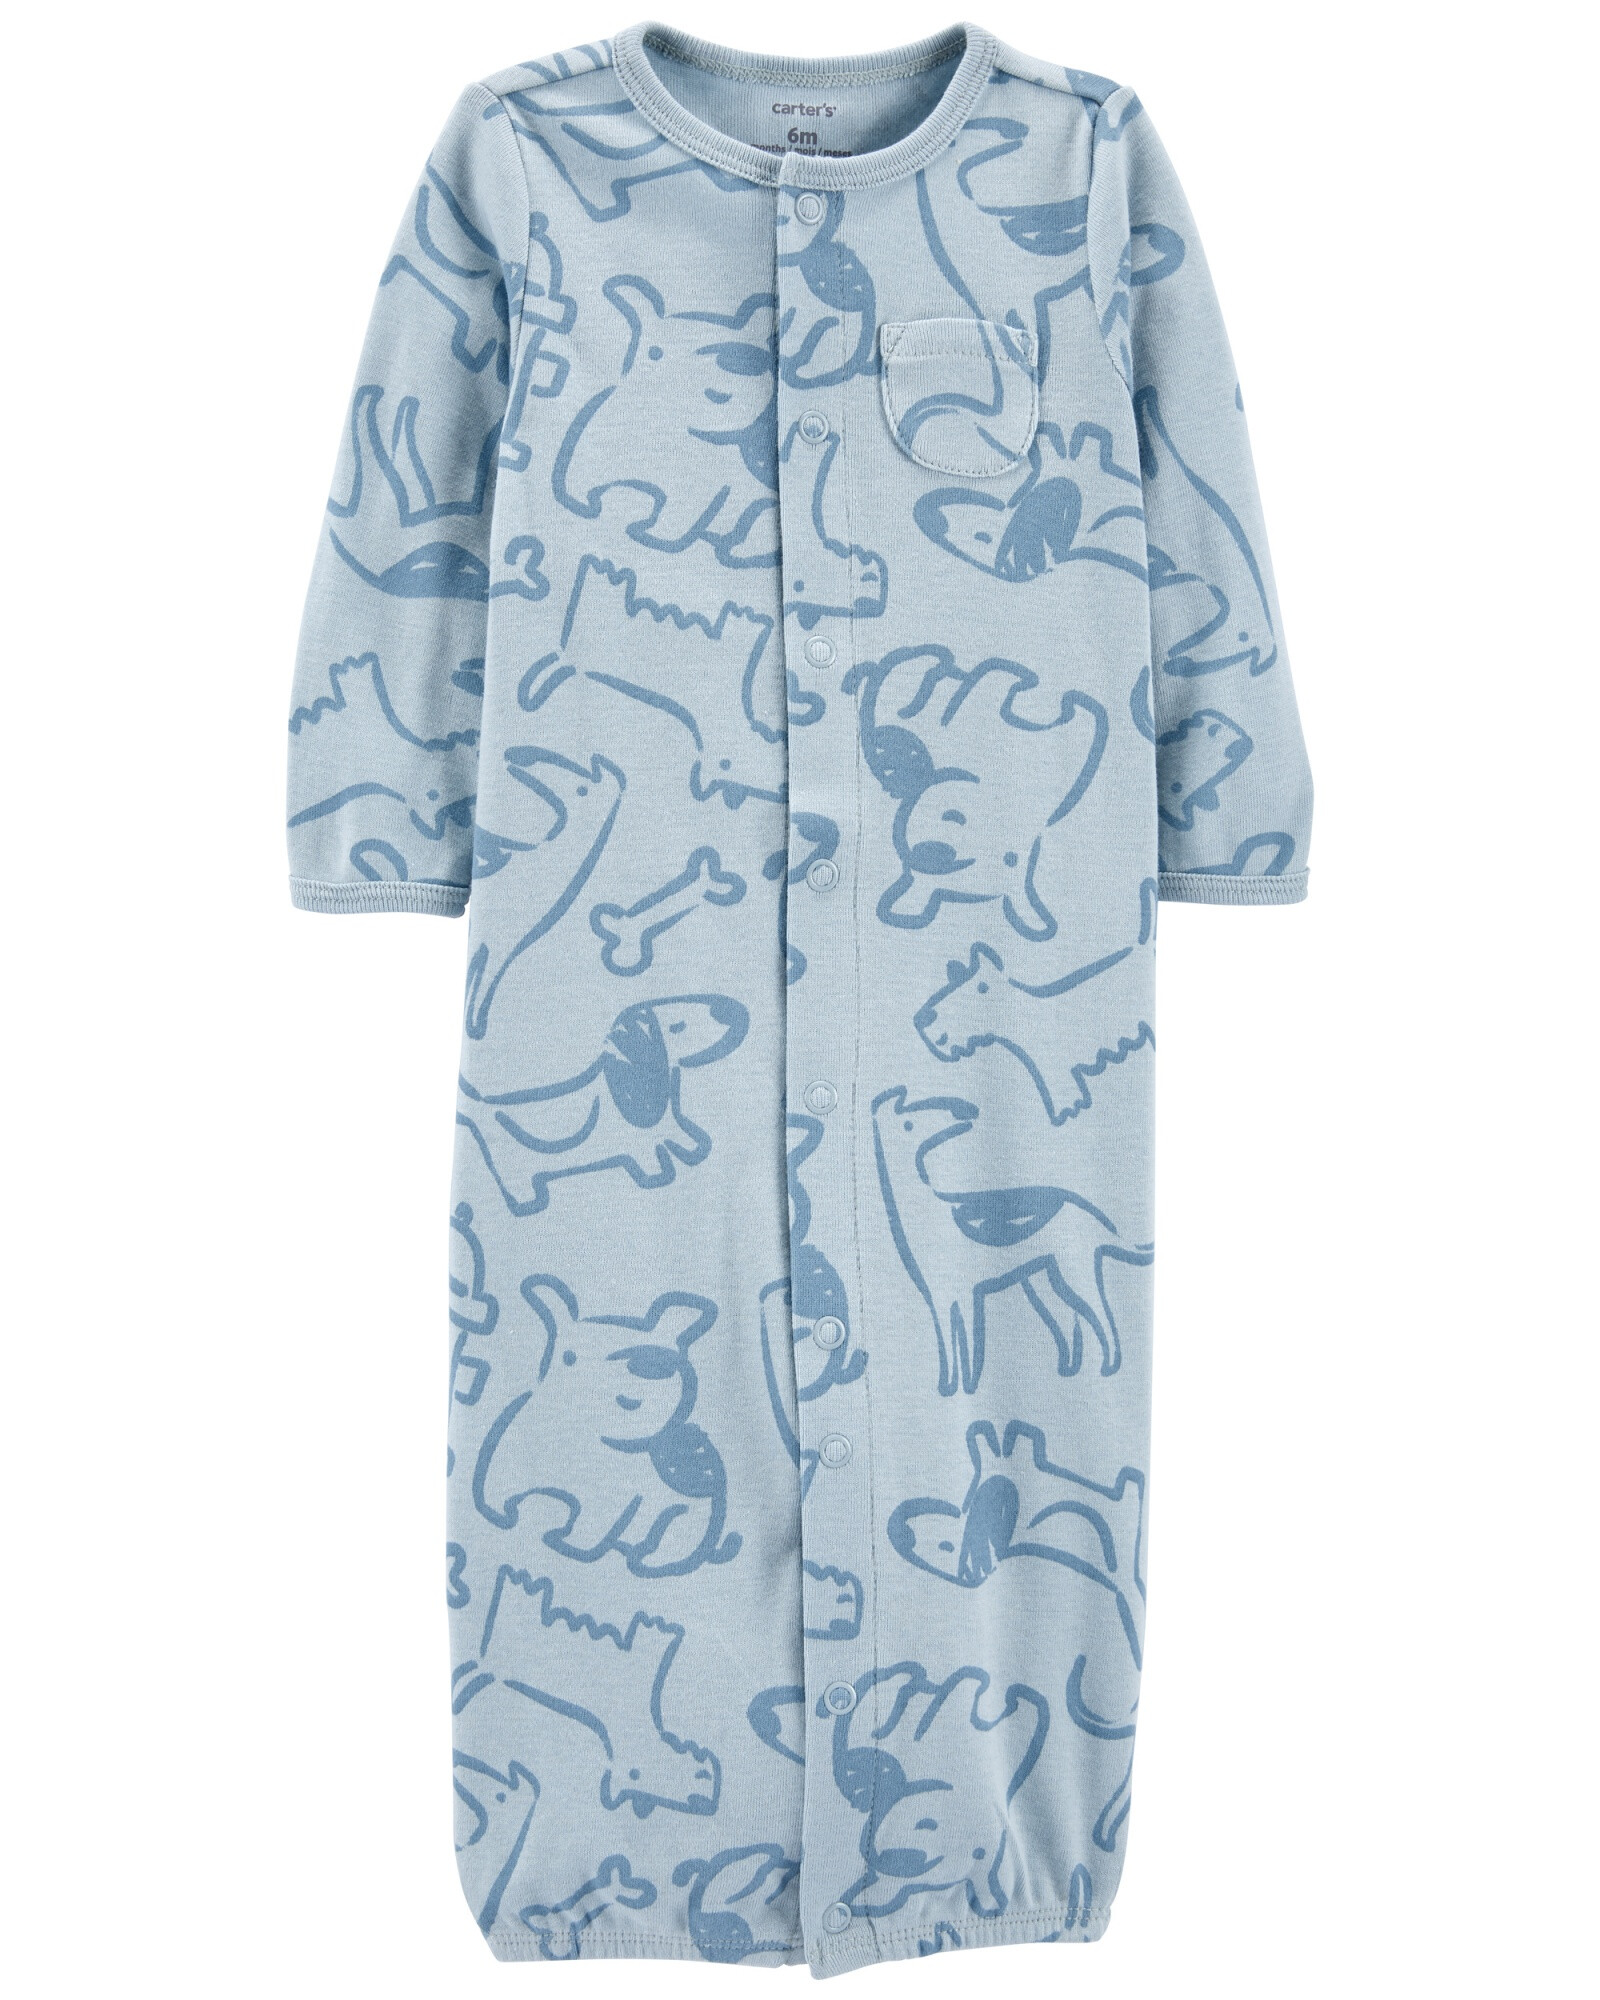 Pijama convertidor de algodón con medias y gorro, diseño perros Sin color